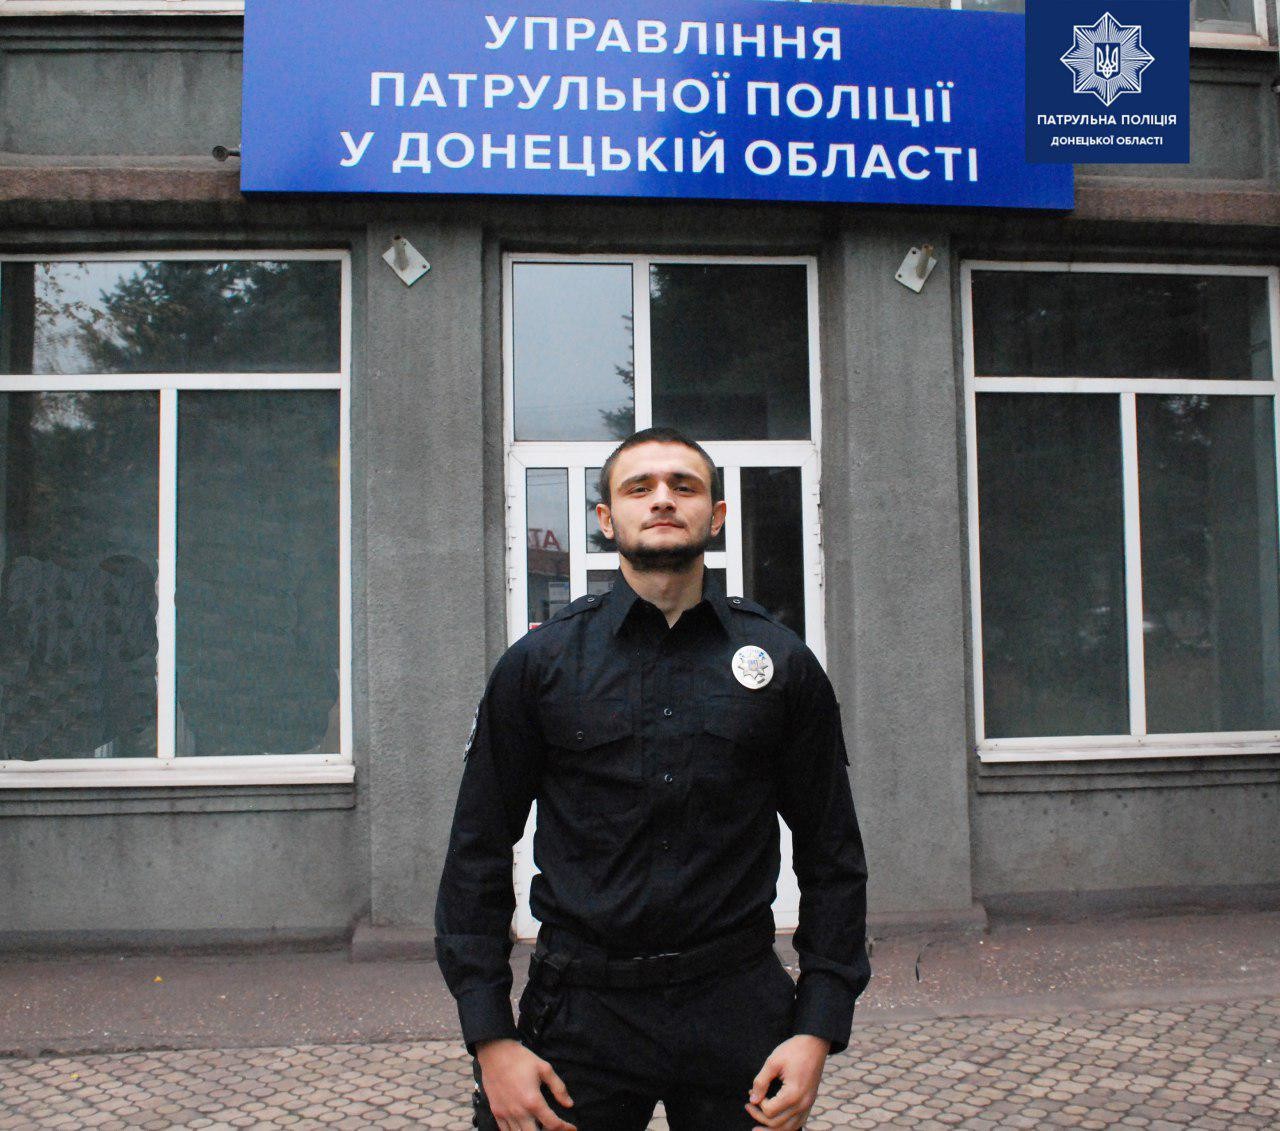 Обезвредивший преступника полицейский Андрей Высоцкий. Фото © Патрульная полиция Украины